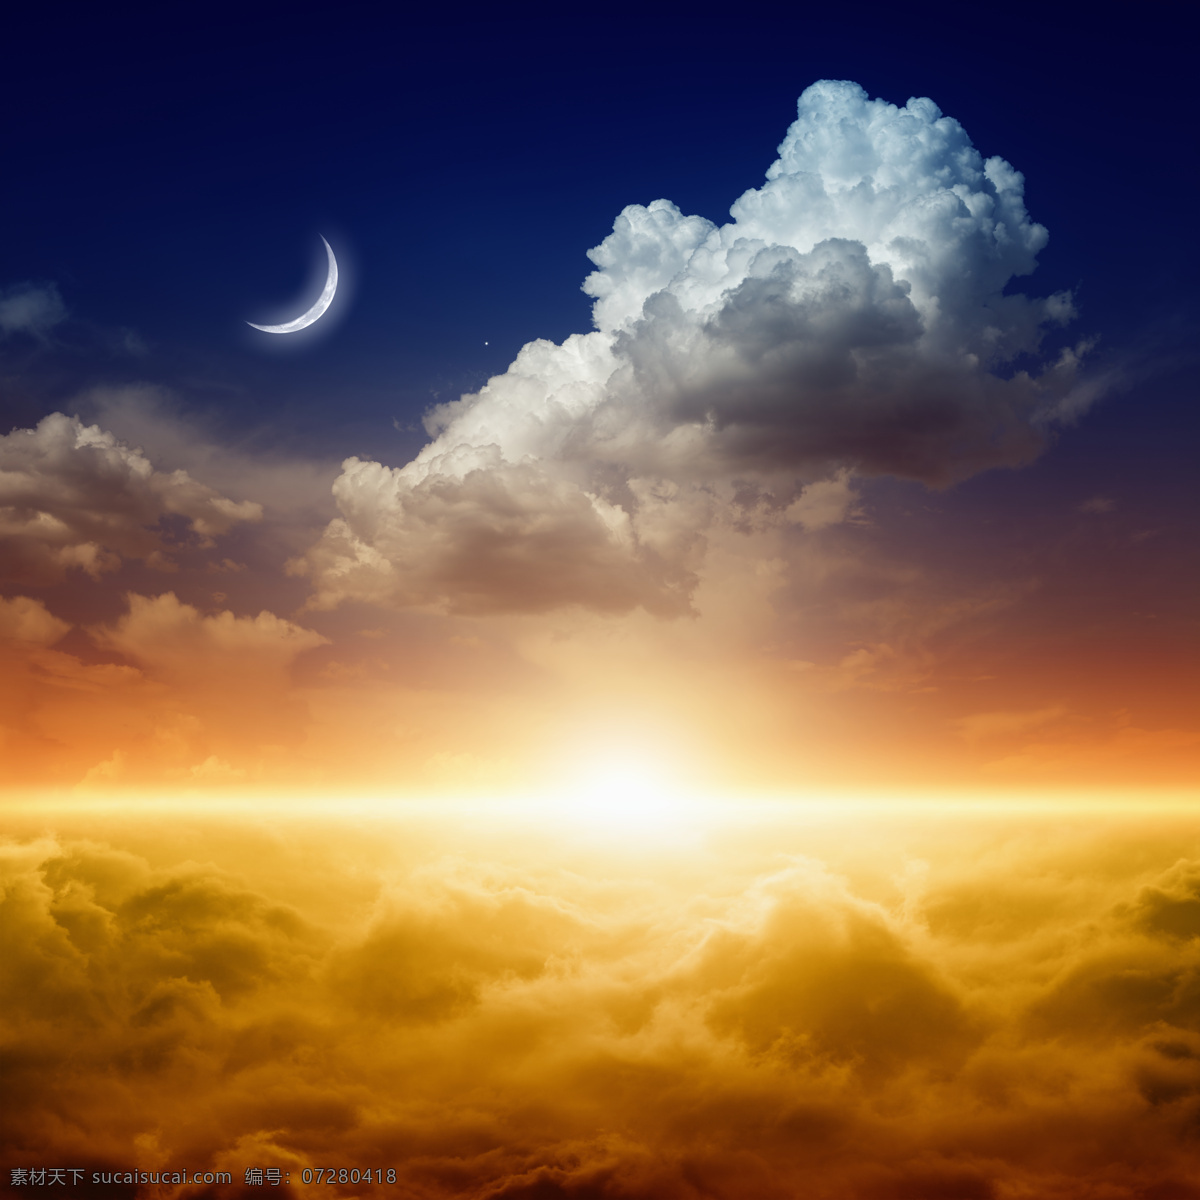 天空 中 地平线 月亮 乌云 背景 阳光 云朵 山水风景 风景图片